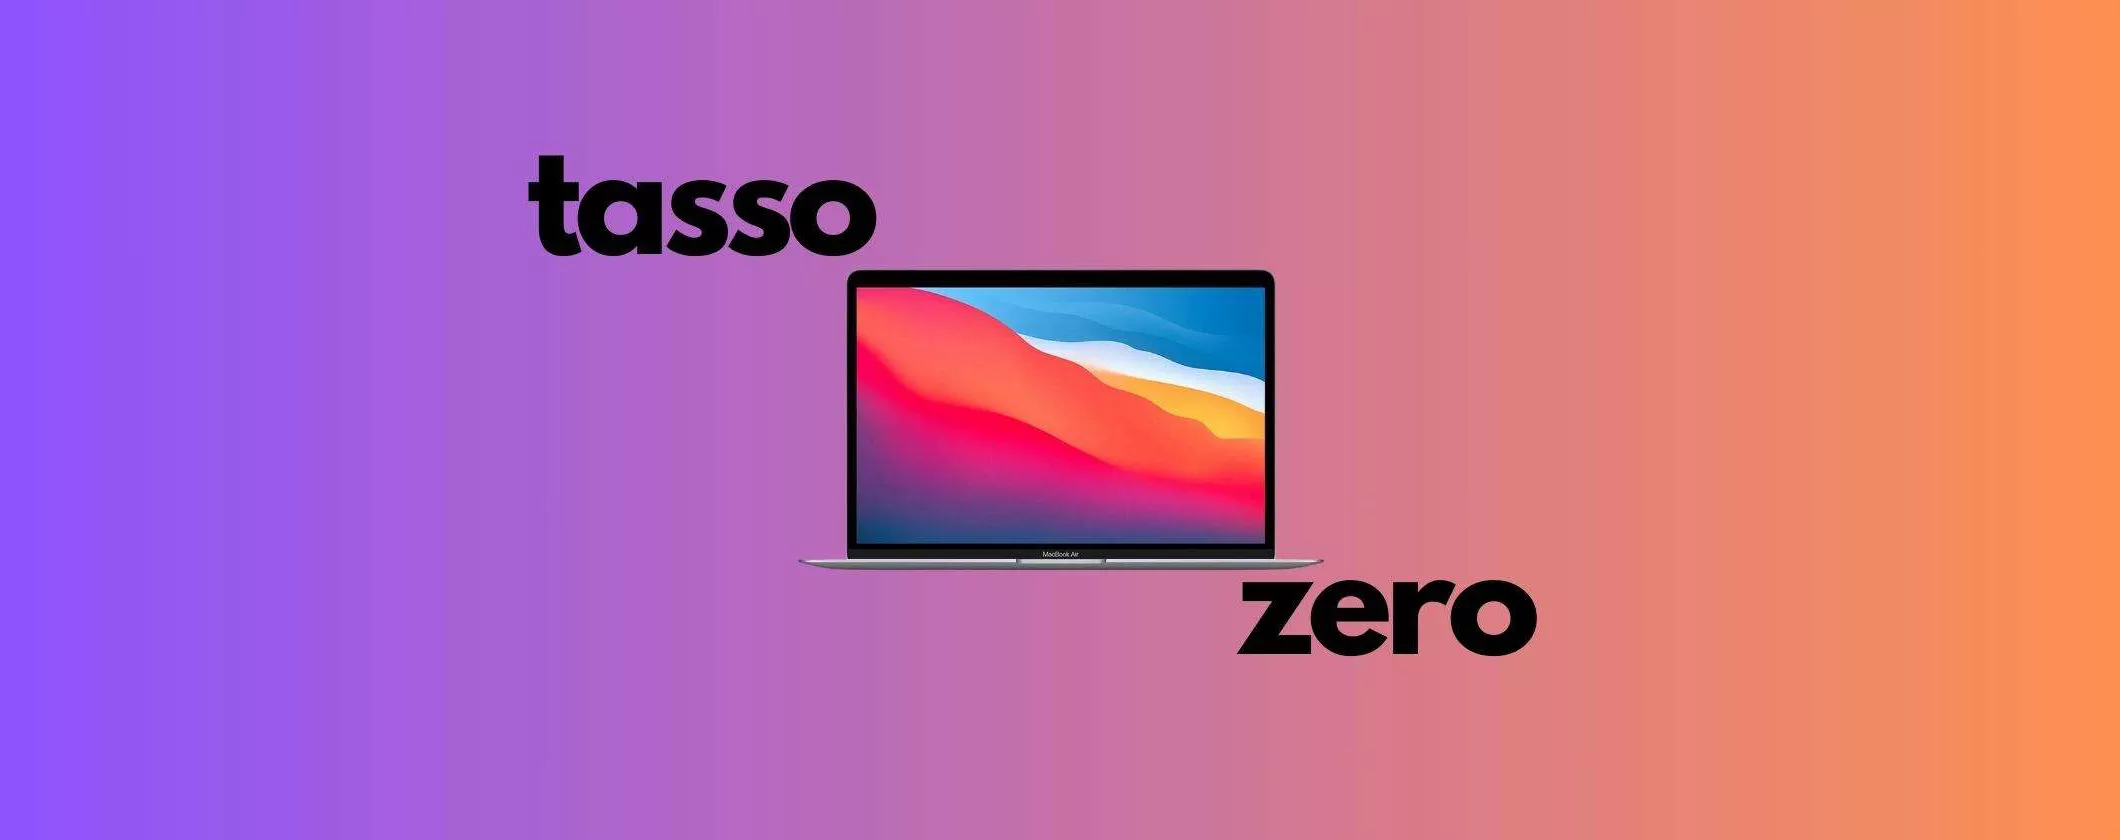 Apple MacBook Air da 47€/mese con il Tasso Zero MediaWorld